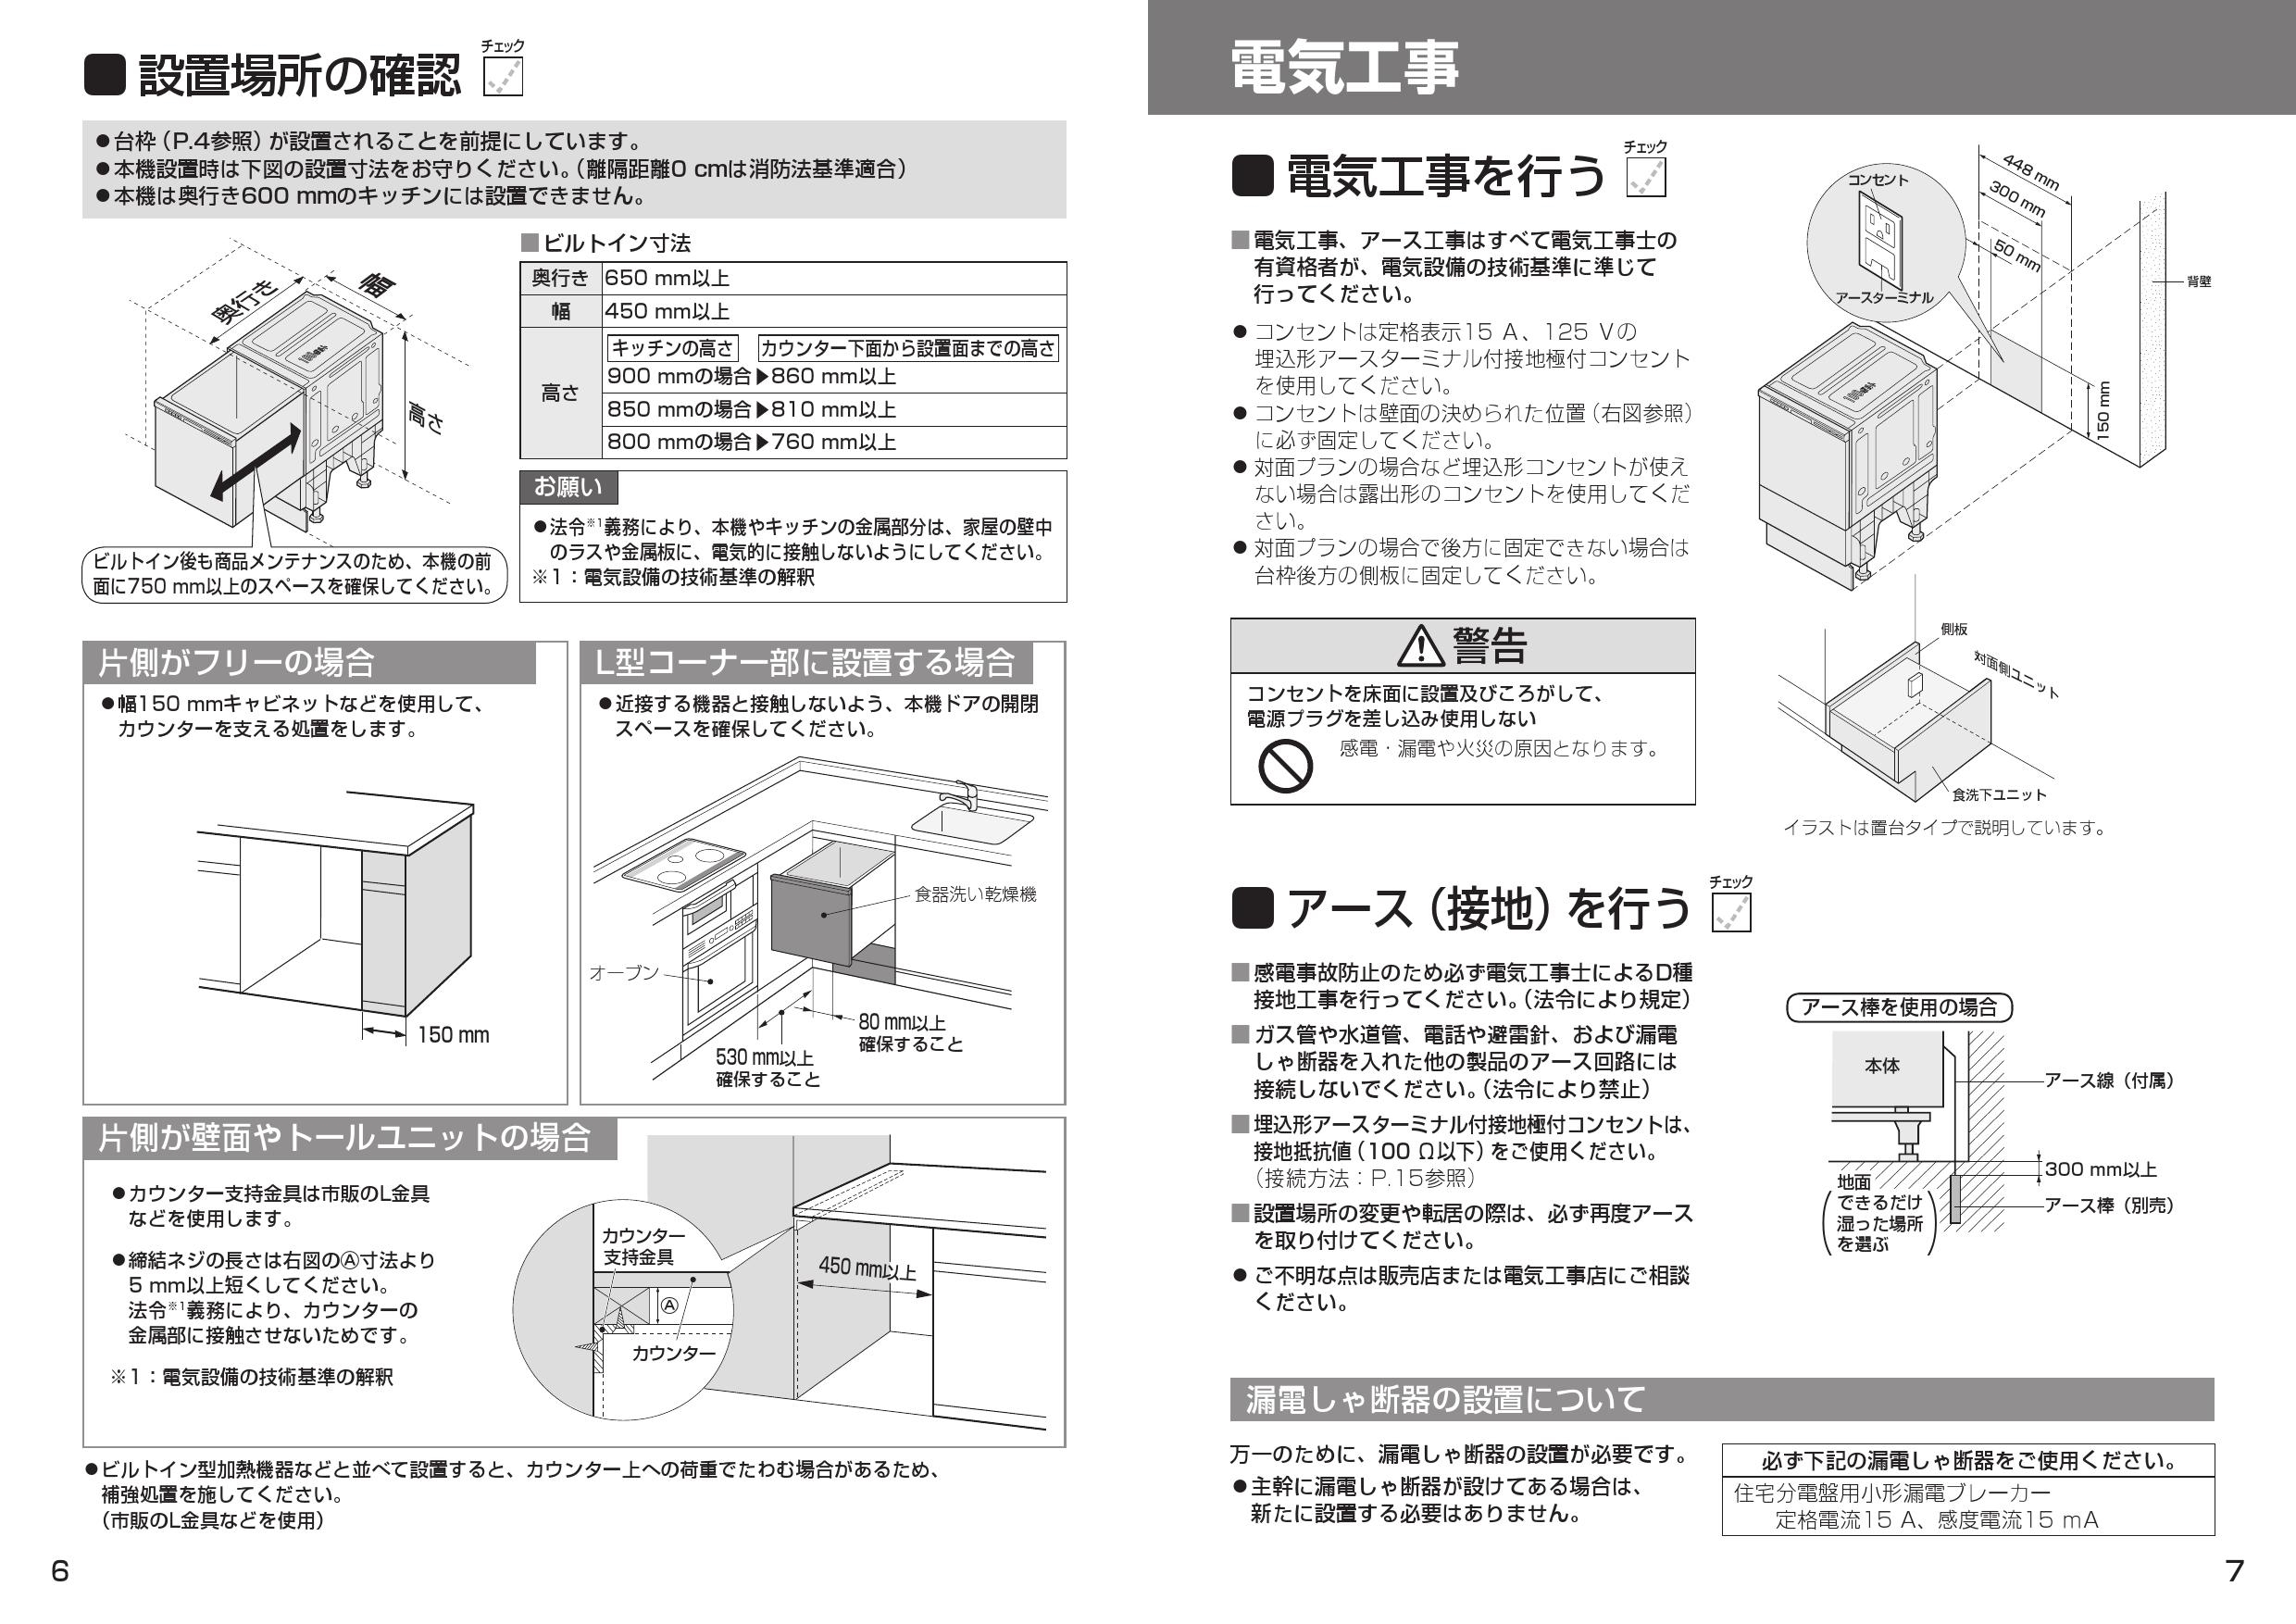 家電 パナソニック ミドルタイプ(幅45cm) ドアパネル型 ビルトイン食器洗い乾燥機 R9シリーズ ベーシックモデル NP-45RS9S返品や - 2